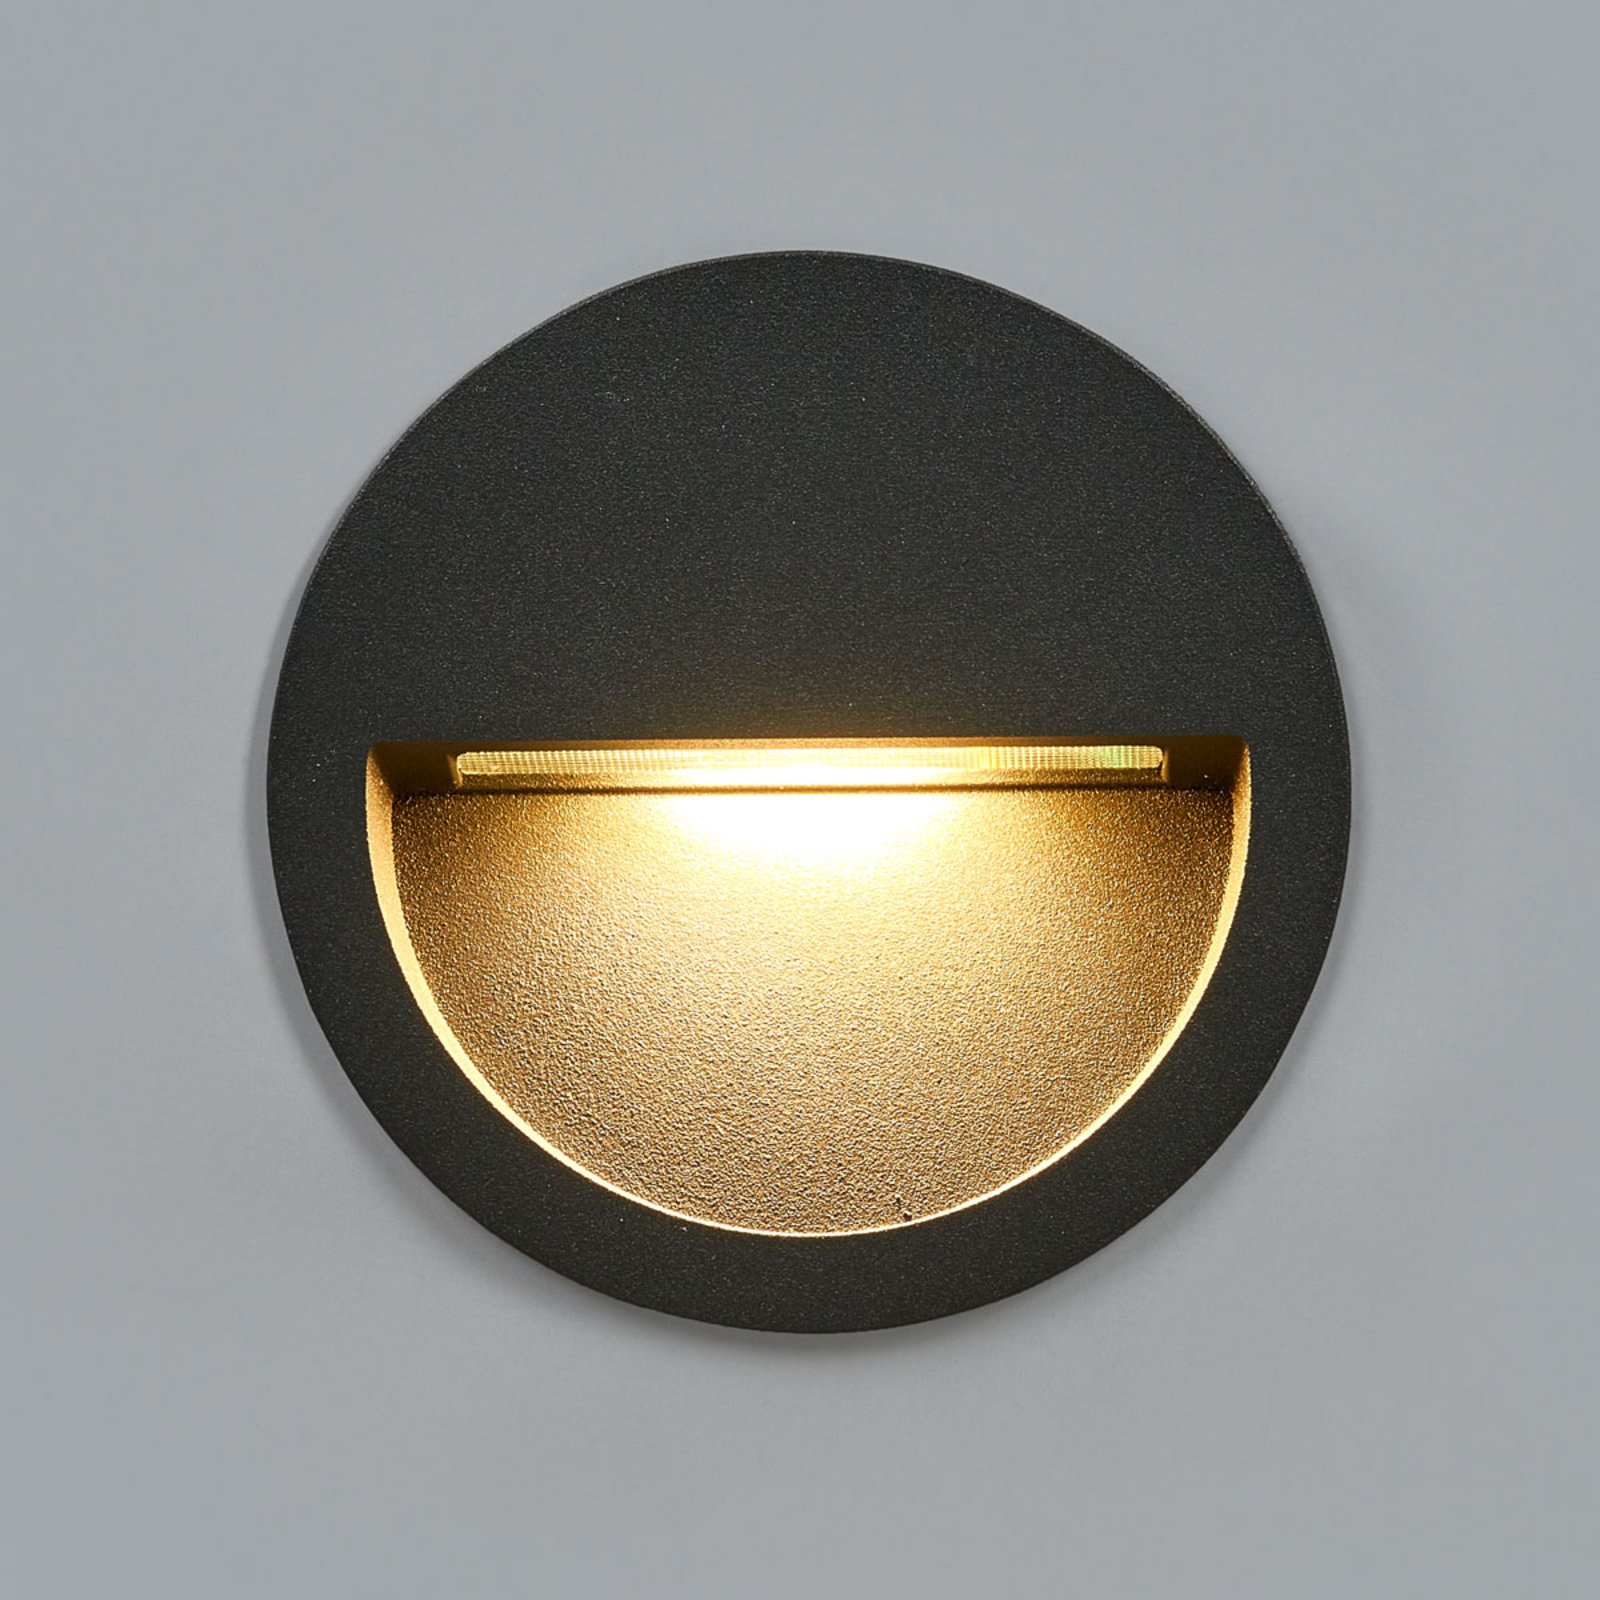 Lucande LED-Wandeinbauleuchte Loya, rund, dunkelgrau, außen